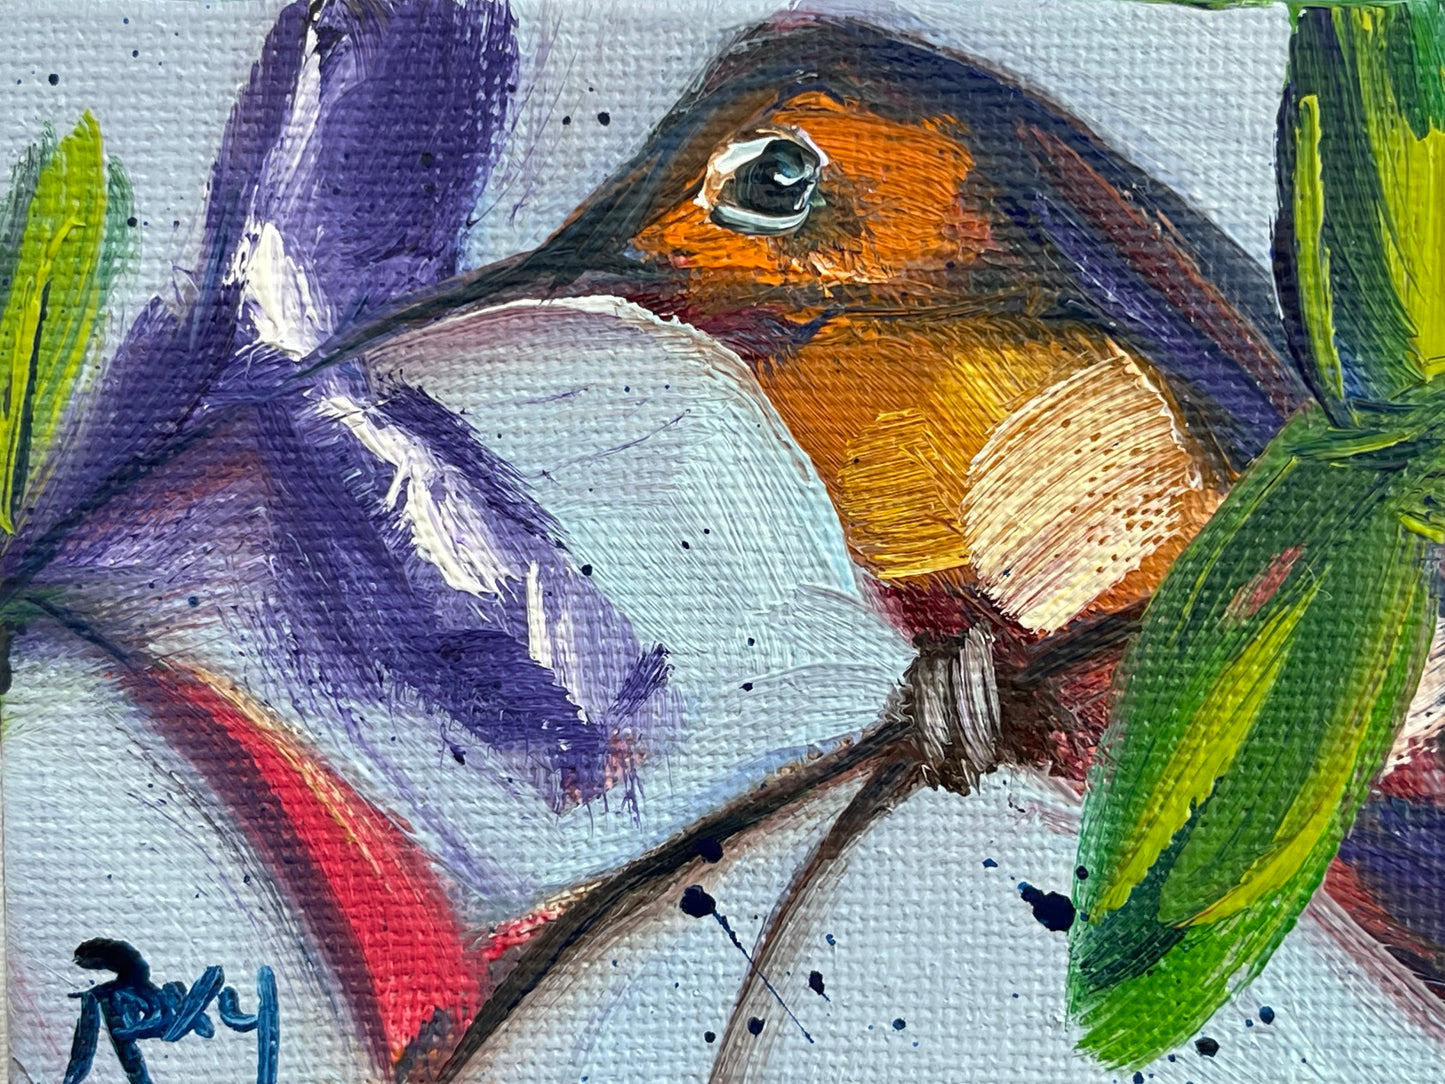 Rufus-Original pintura al óleo de colibrí en miniatura con soporte